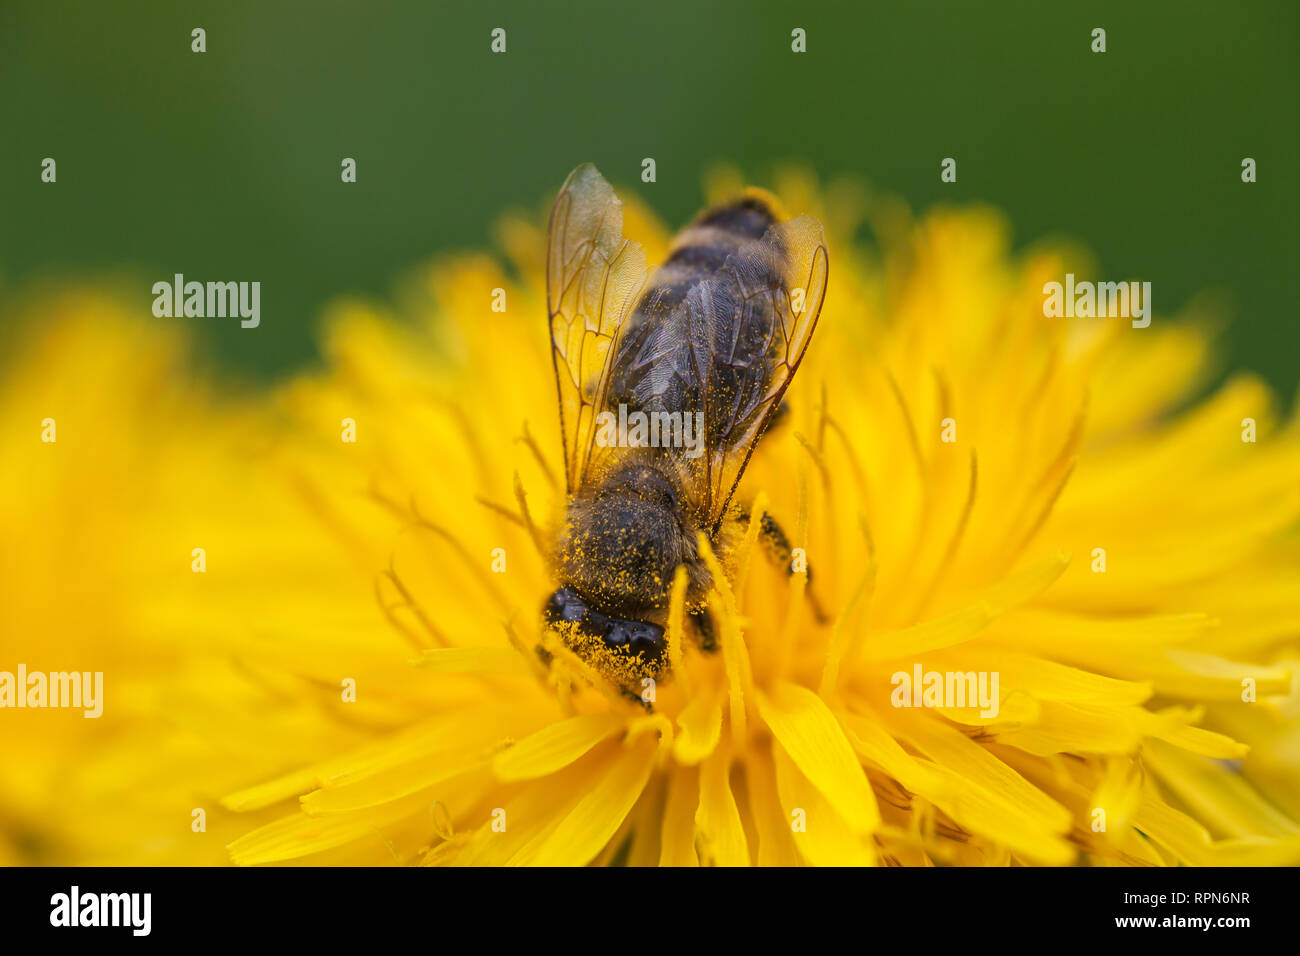 Zoologie/Tiere, Insekten (Insecta), Biene auf Löwenzahn (Taraxacum), Blume, Additional-Rights - Clearance-Info - Not-Available Stockfoto